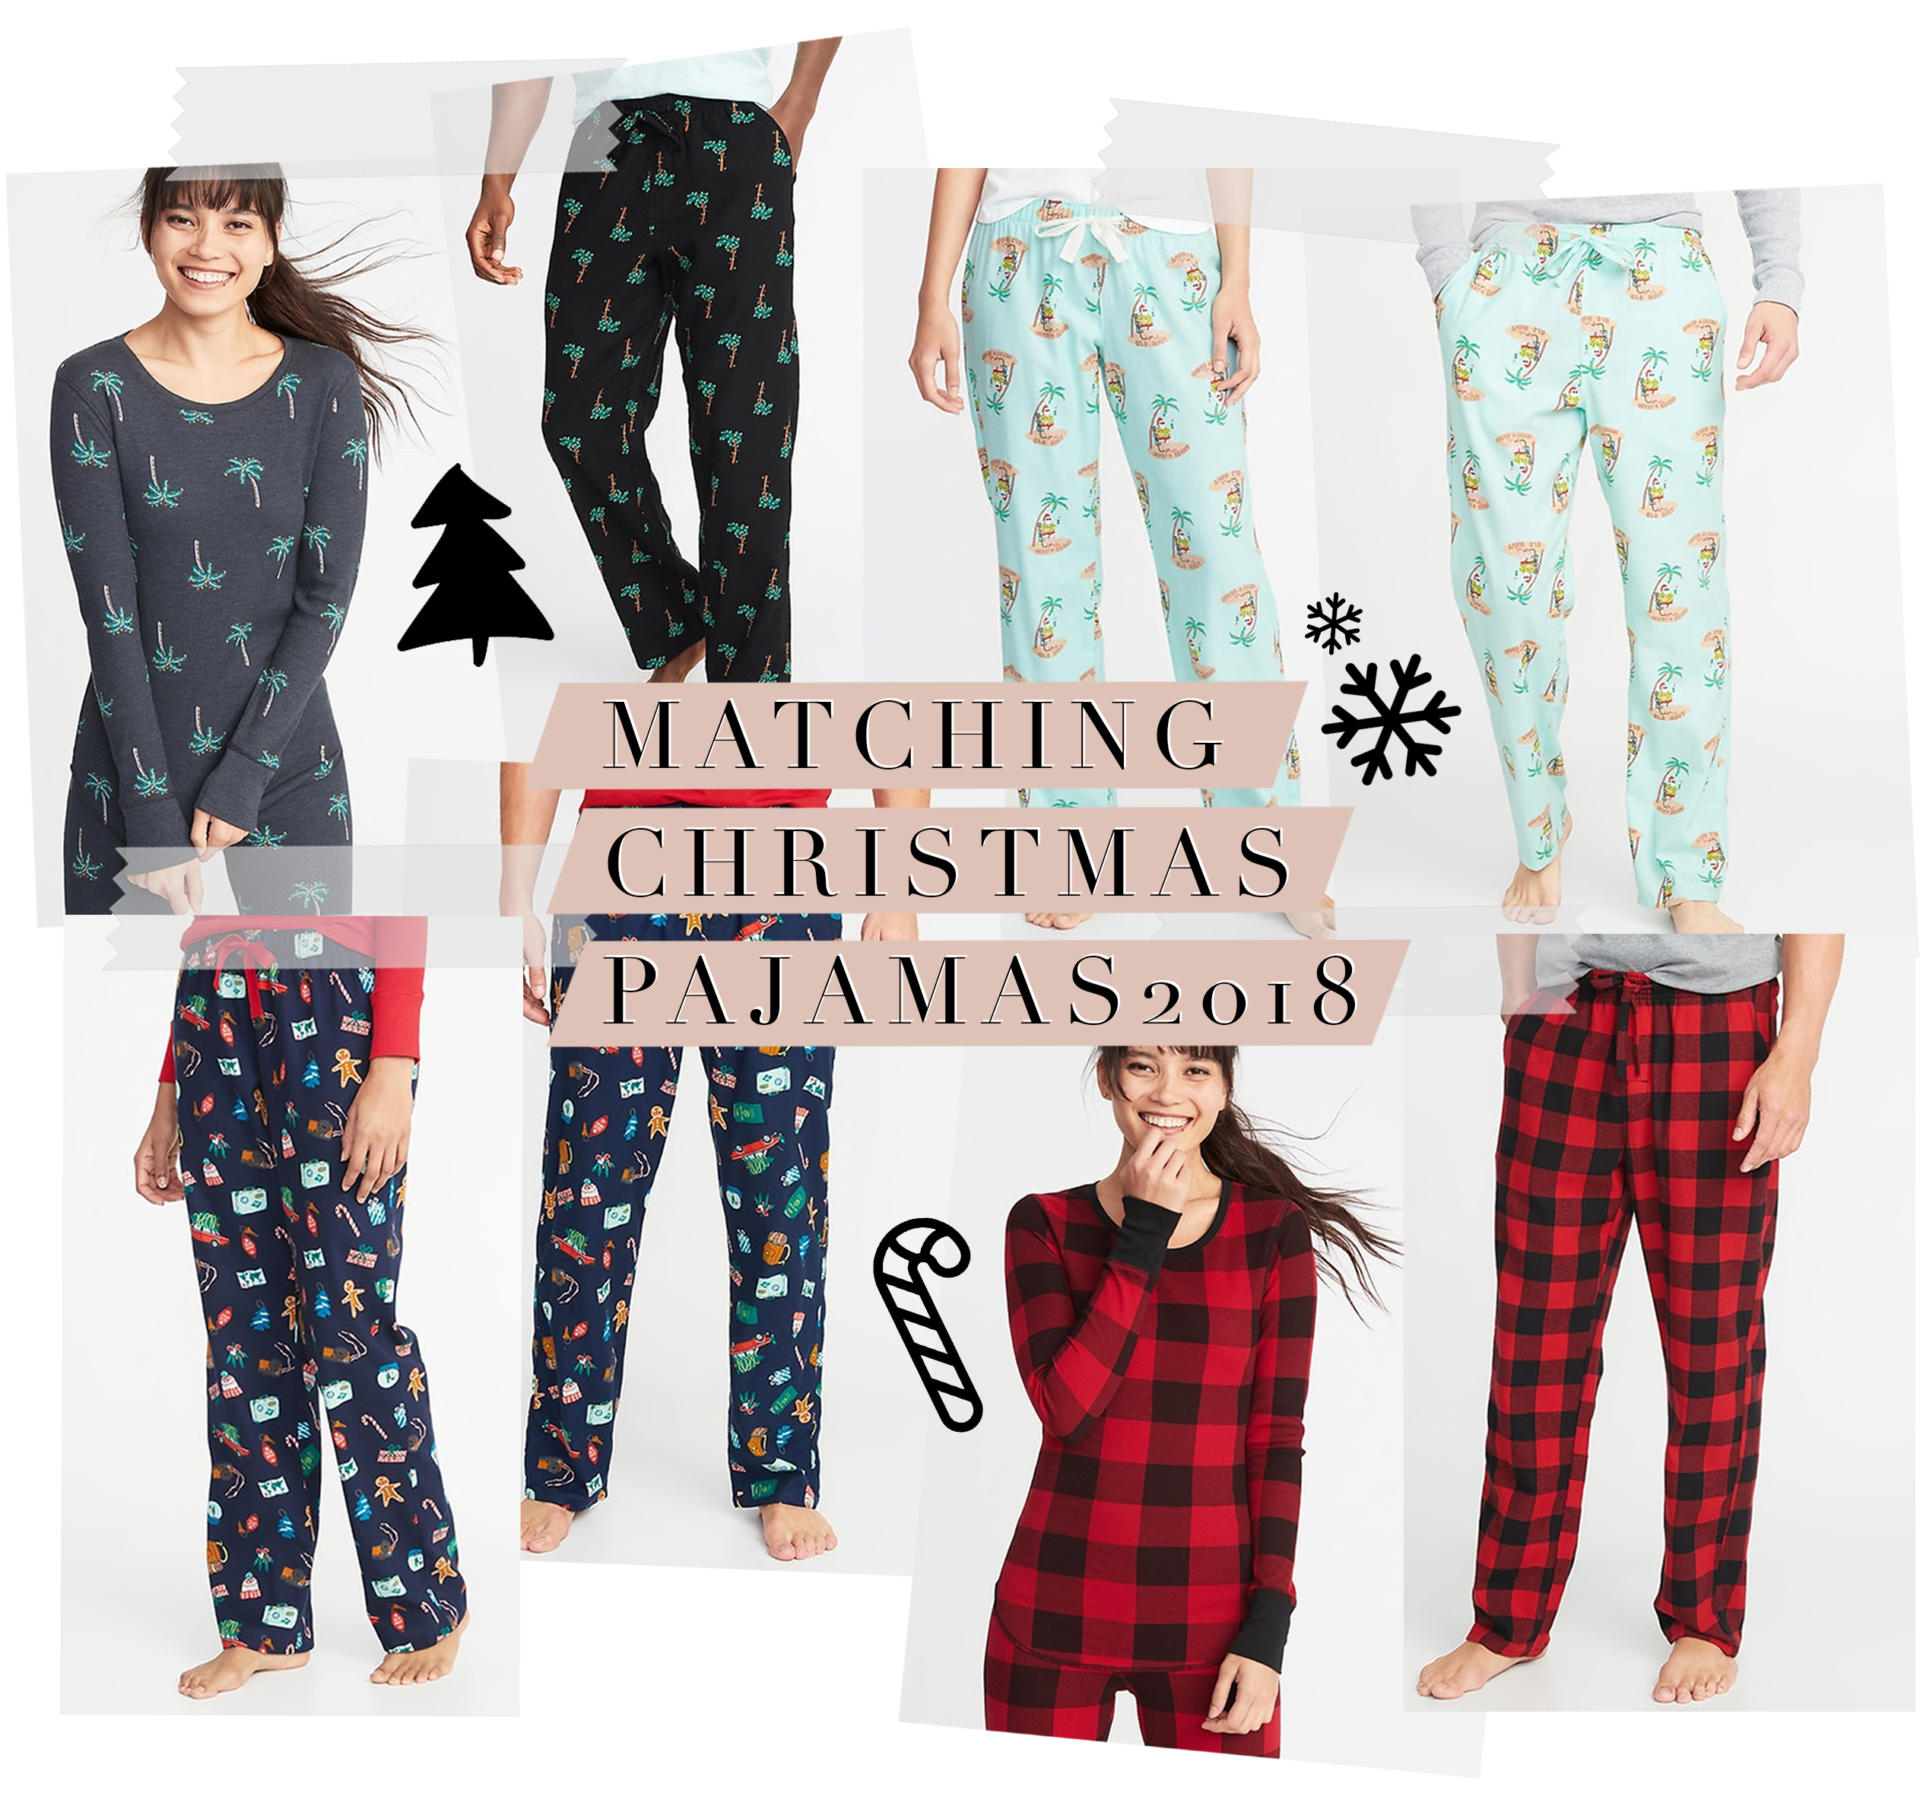 Matching Christmas Pajama Picks For 2018